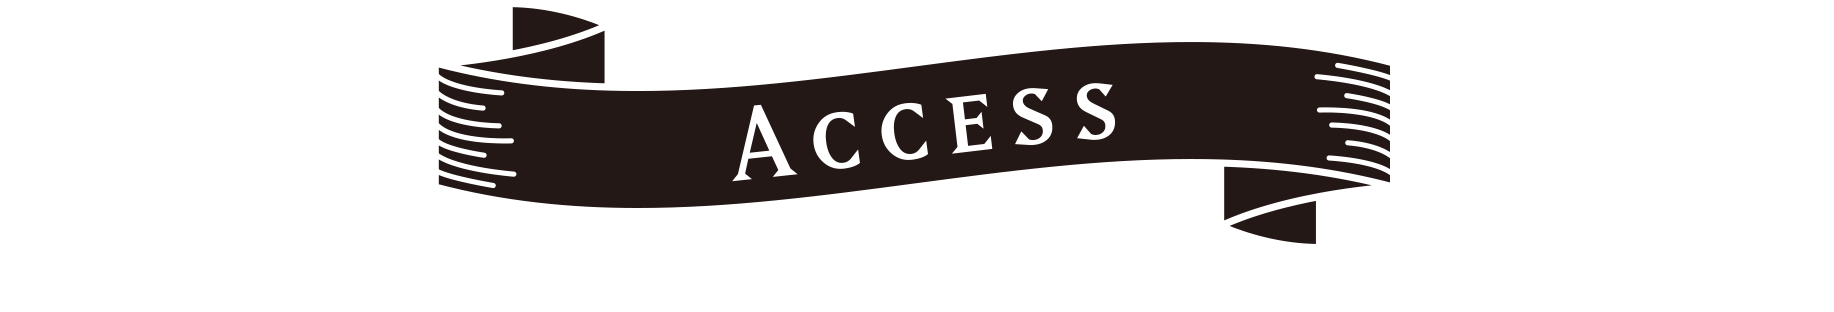 BASIC-アクセスマーク